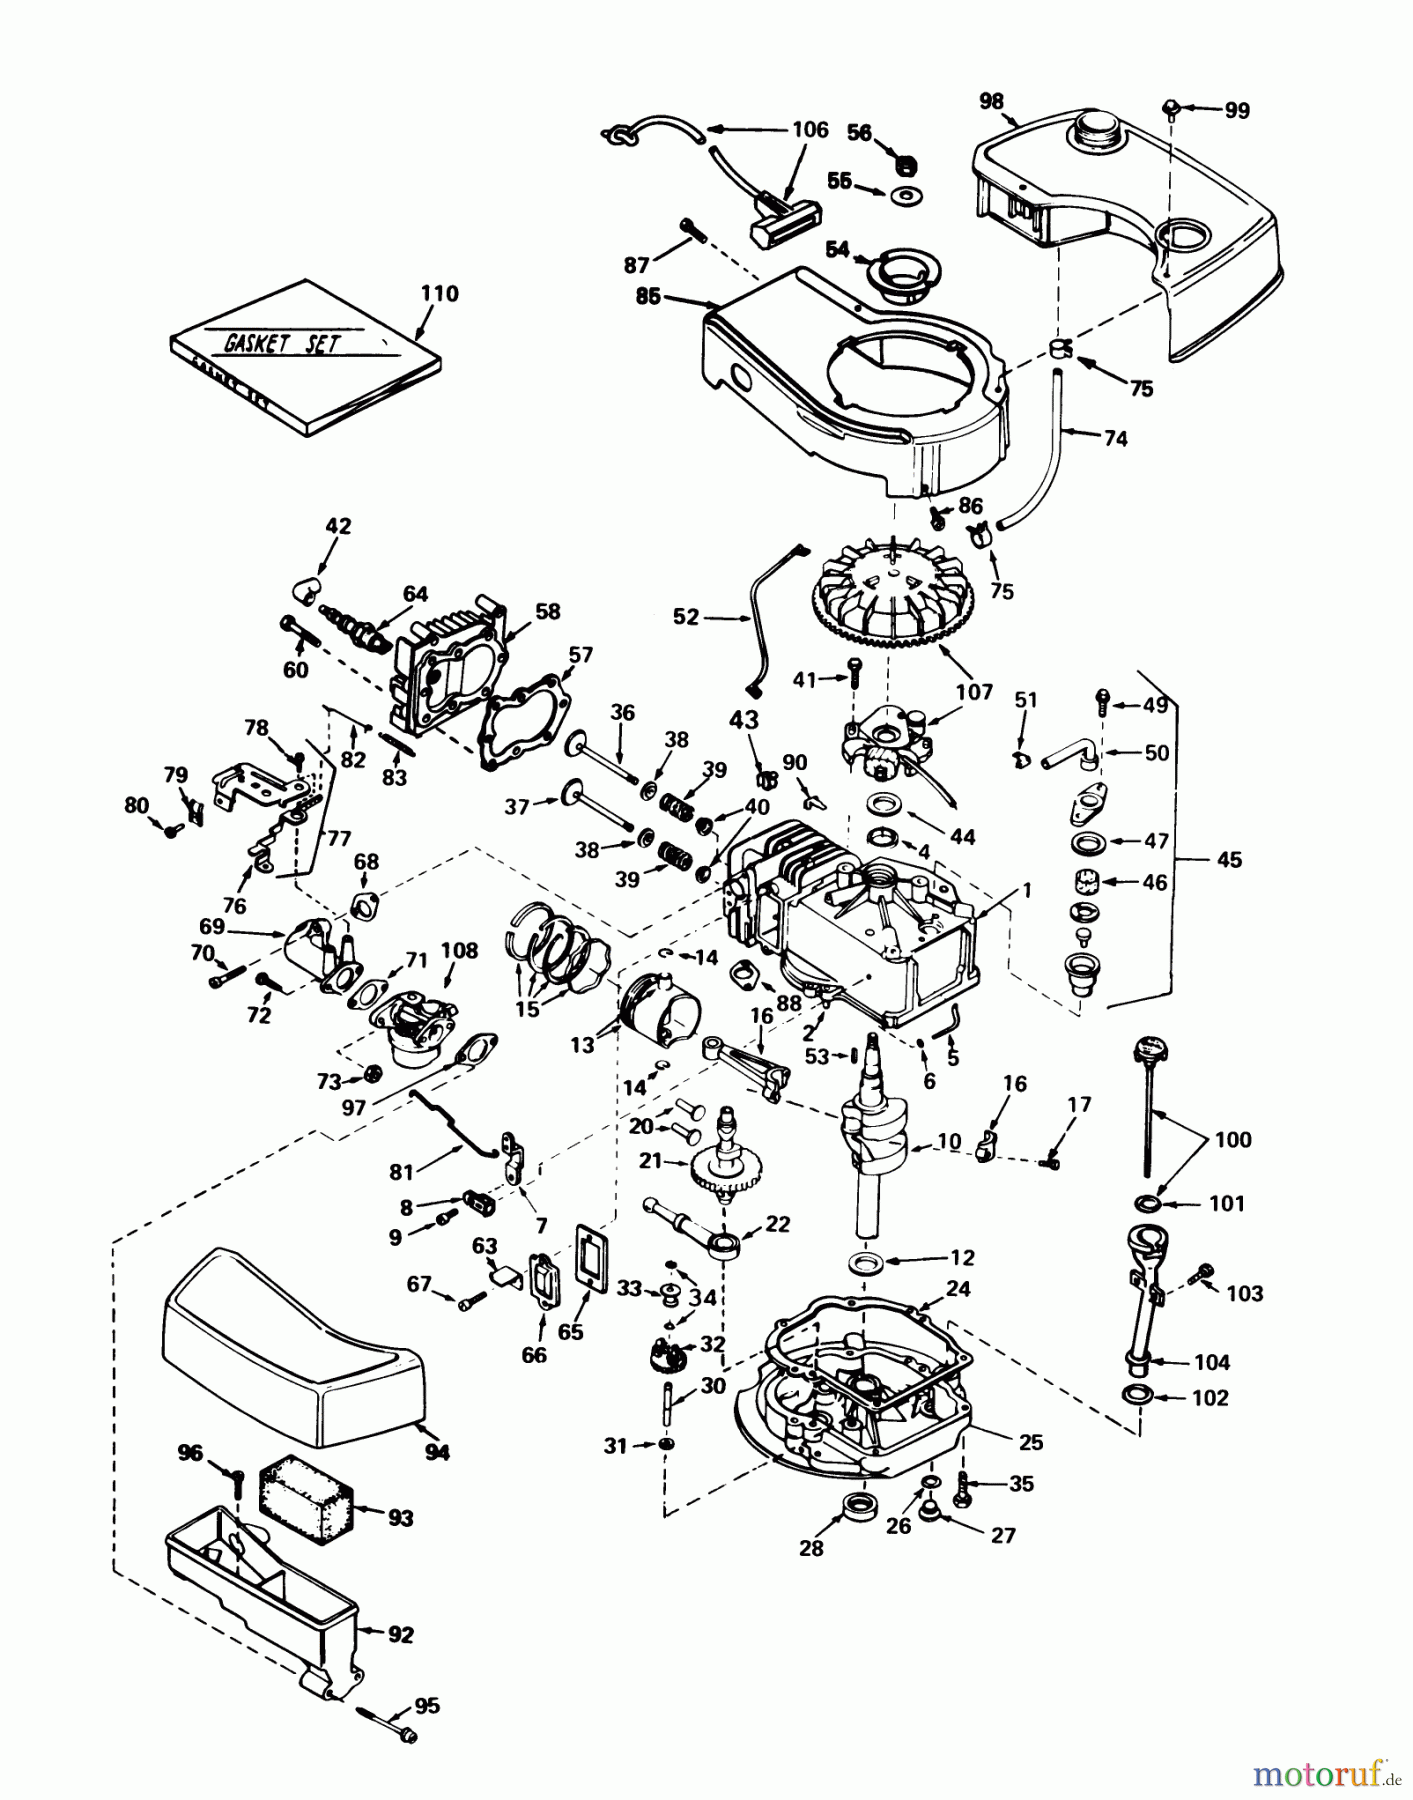  Toro Neu Mowers, Walk-Behind Seite 1 20740 - Toro Lawnmower, 1978 (8000001-8999999) ENGINE TECUMSEH MODEL TNT 120-12007B